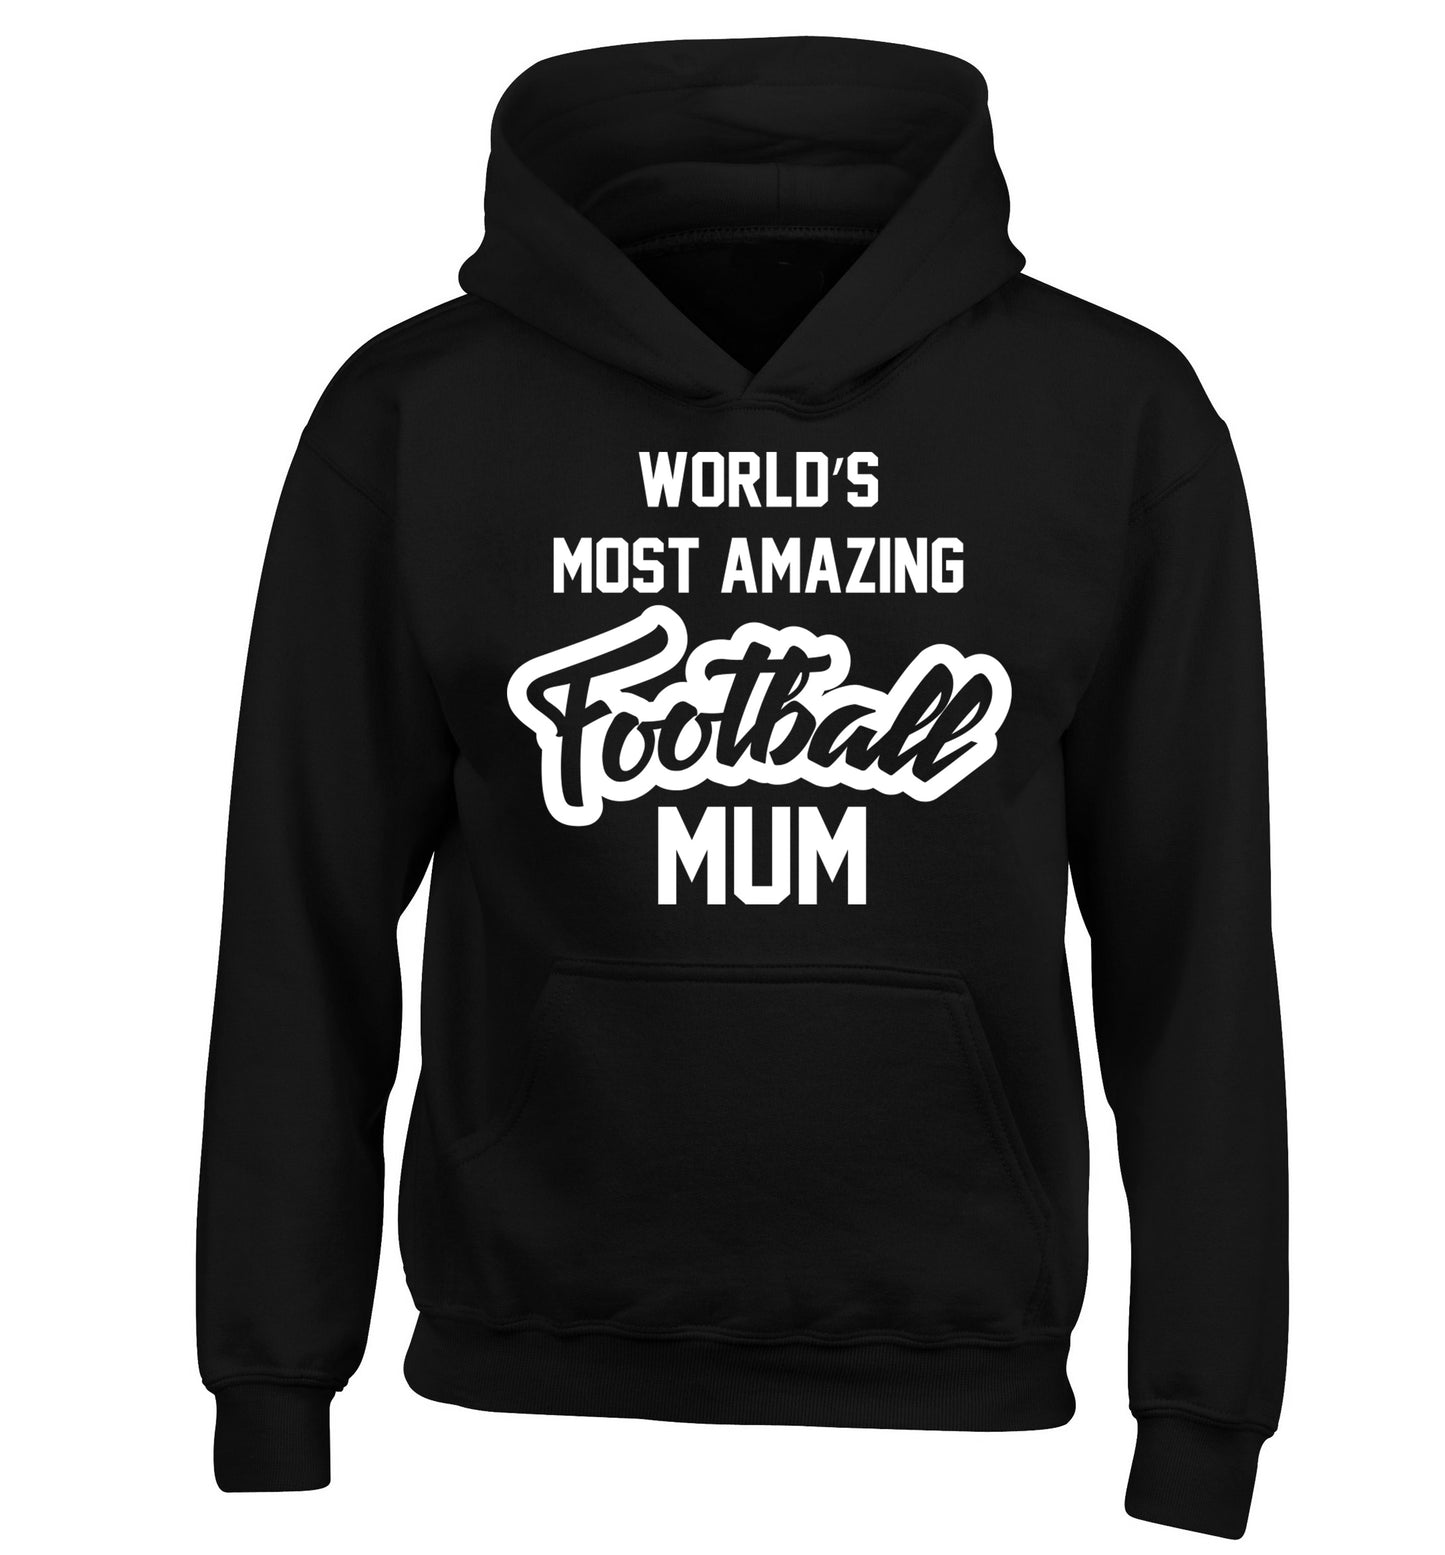 Worlds most amazing football mum children's black hoodie 12-14 Years